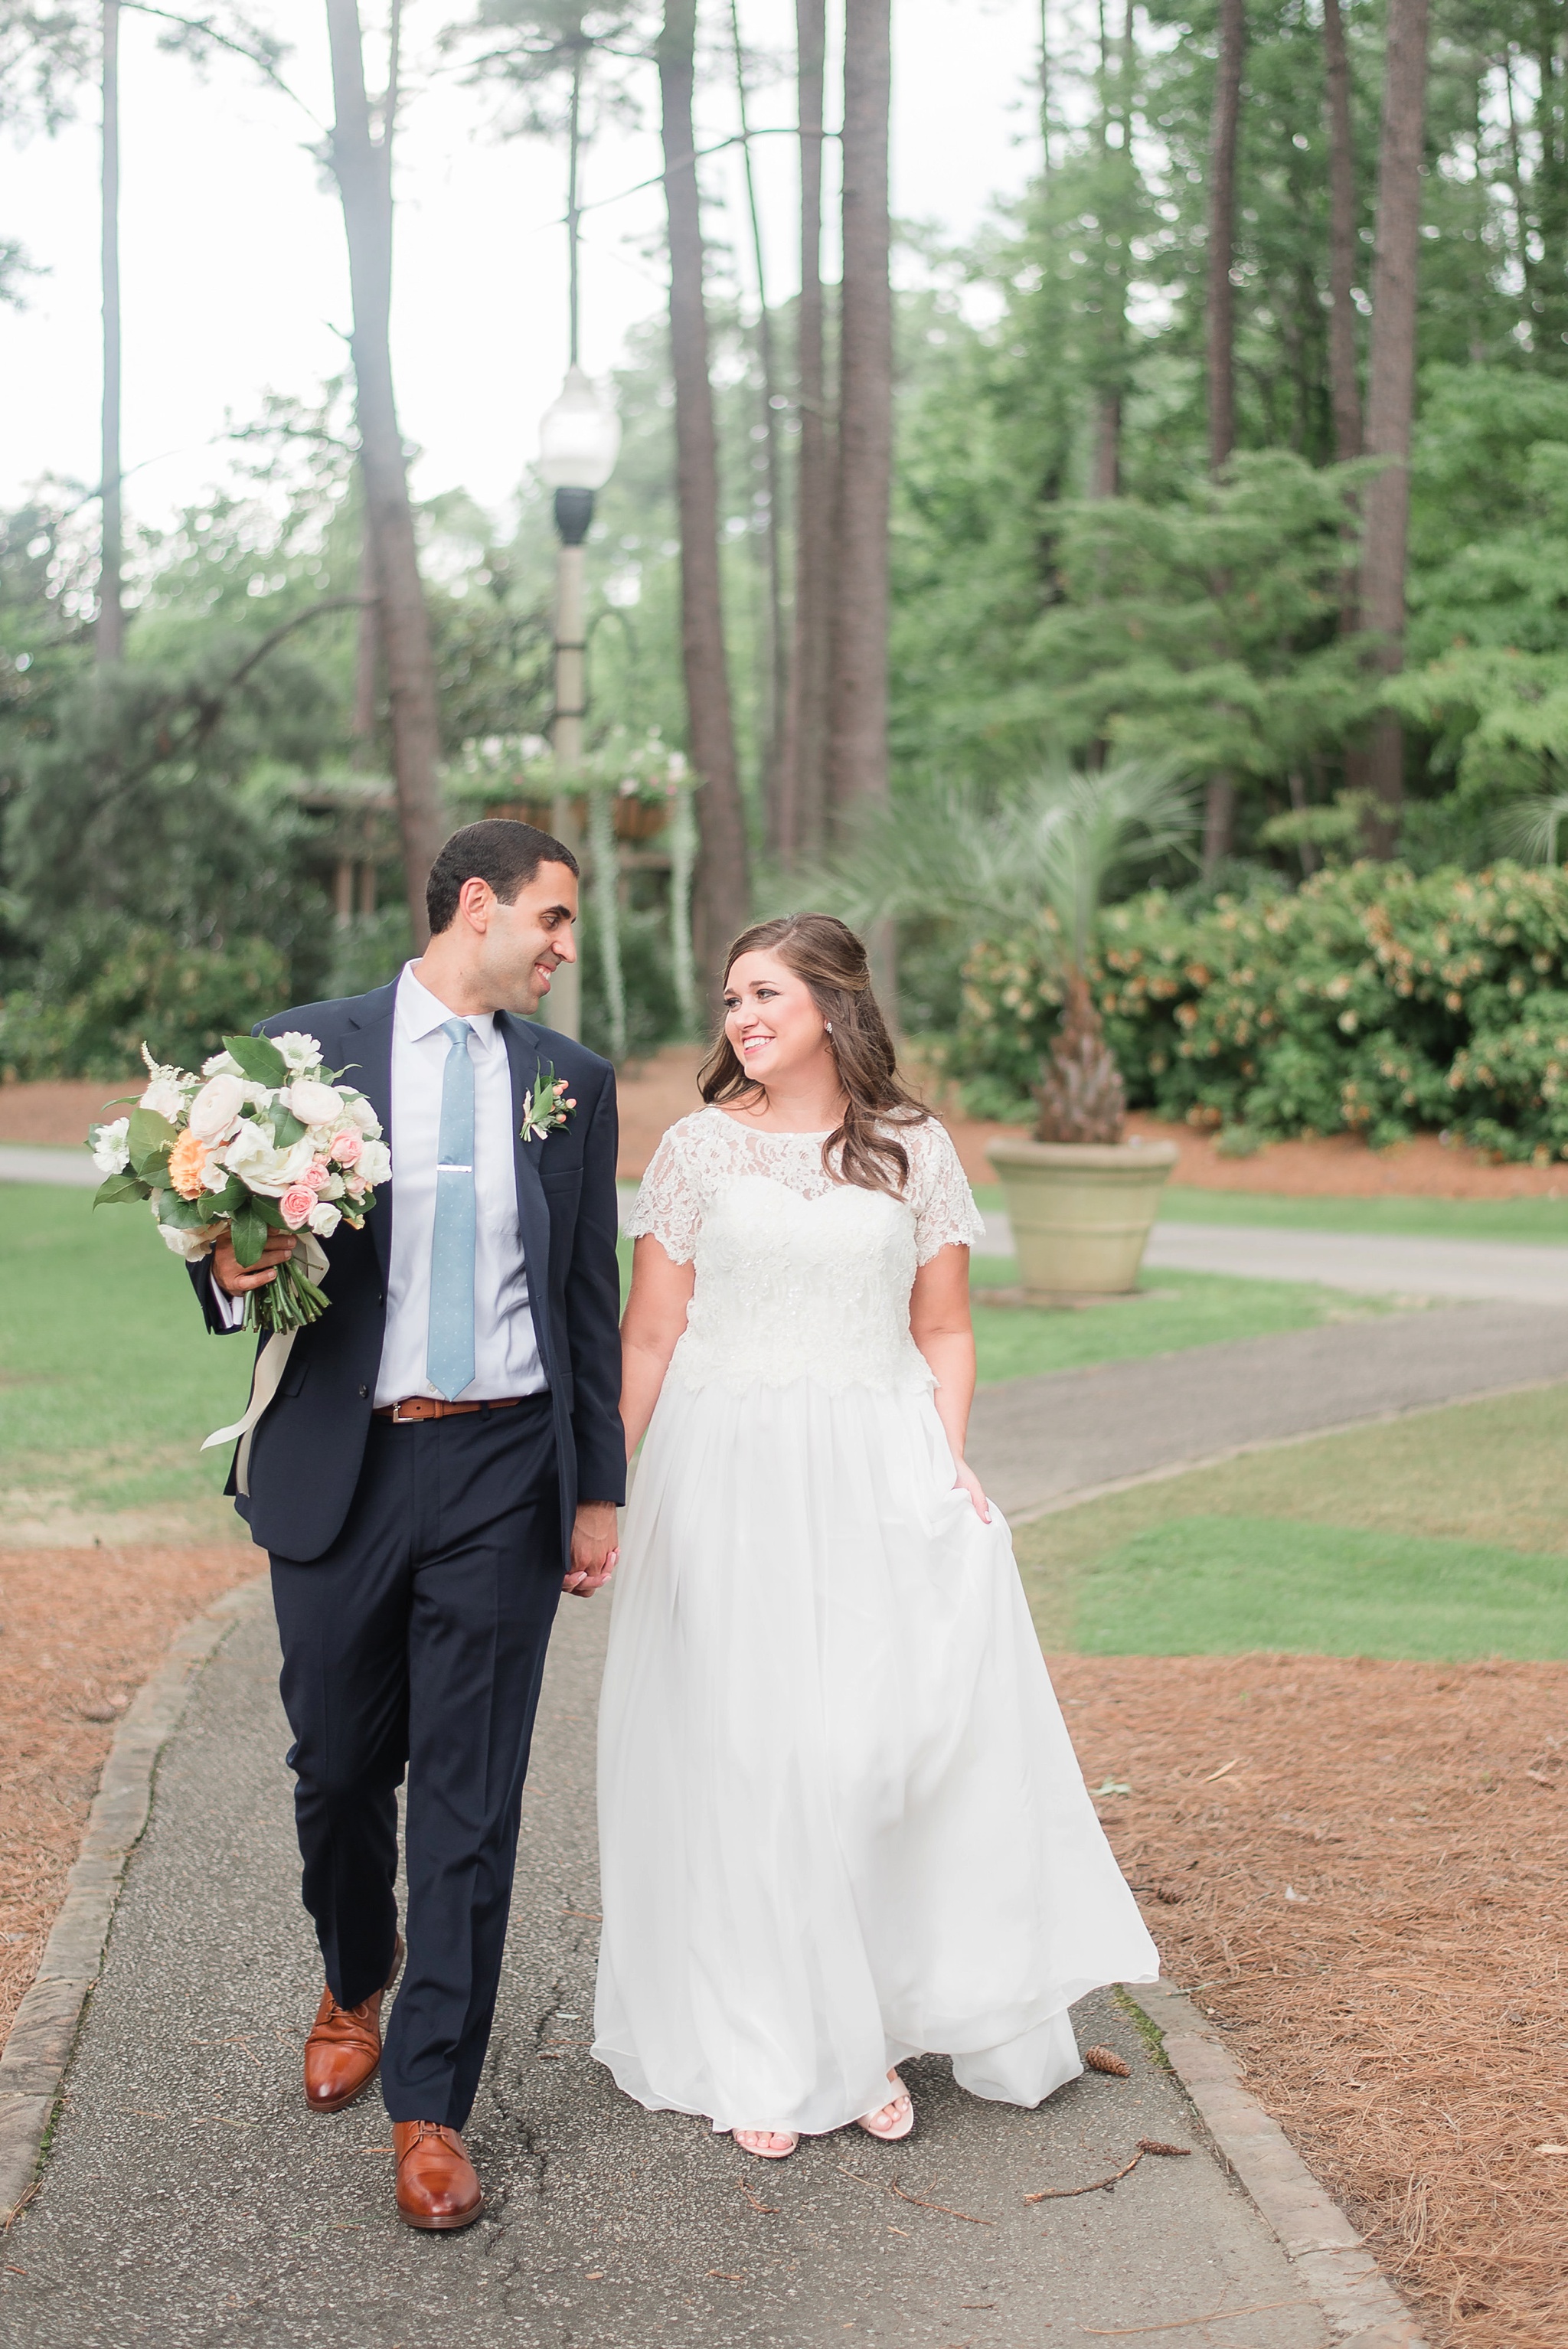 Aldridge Gardens Hoover Alabama Wedding Day | Birmingham Alabama Wedding Photographers_0031.jpg